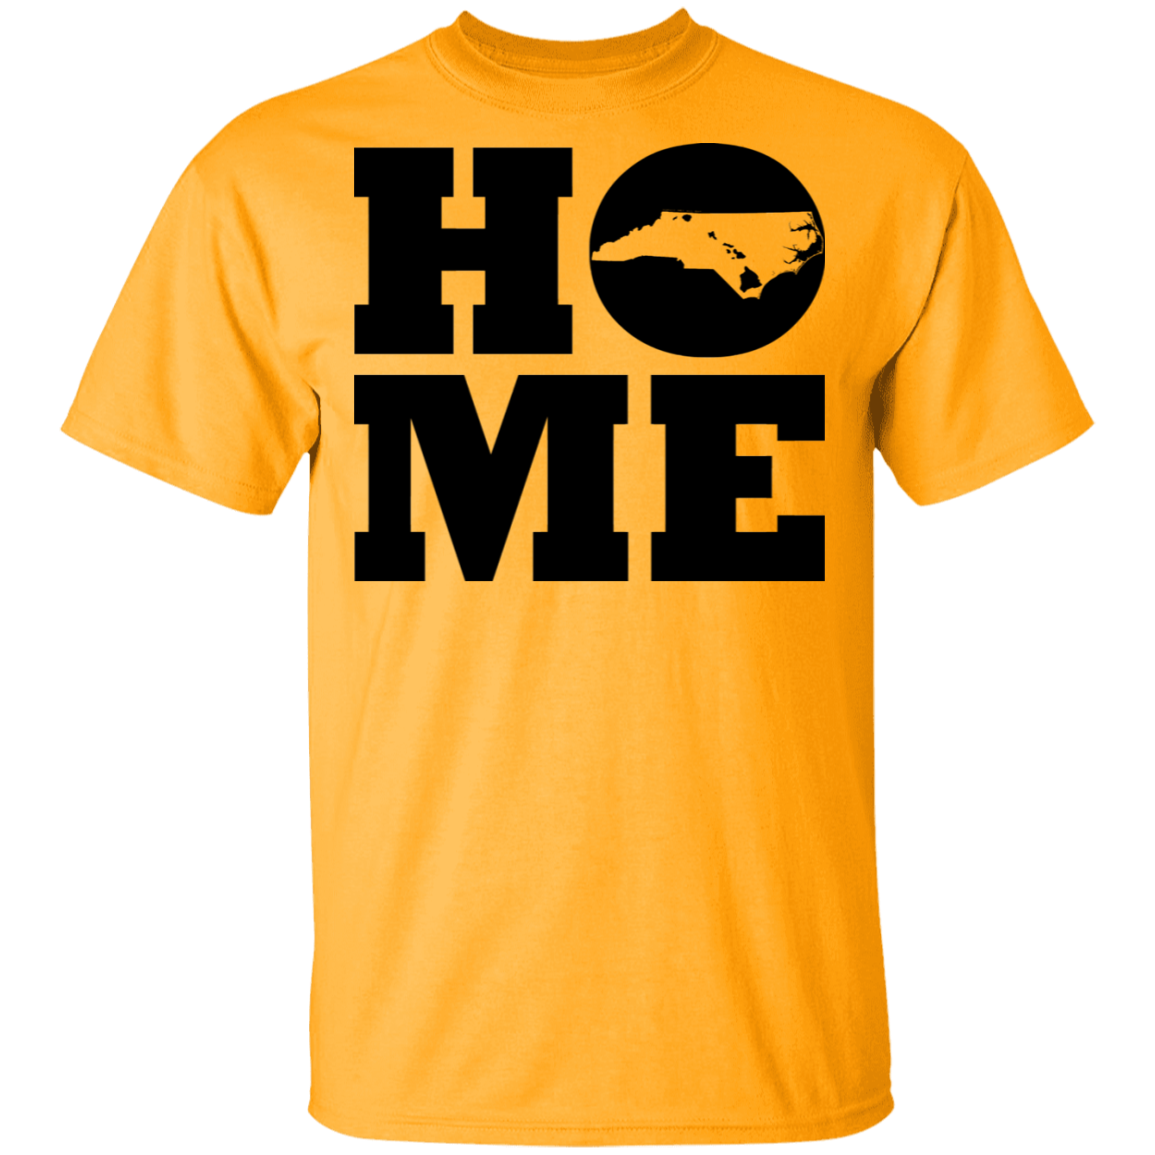 Home Roots Hawai'i and North Carolina T-Shirt